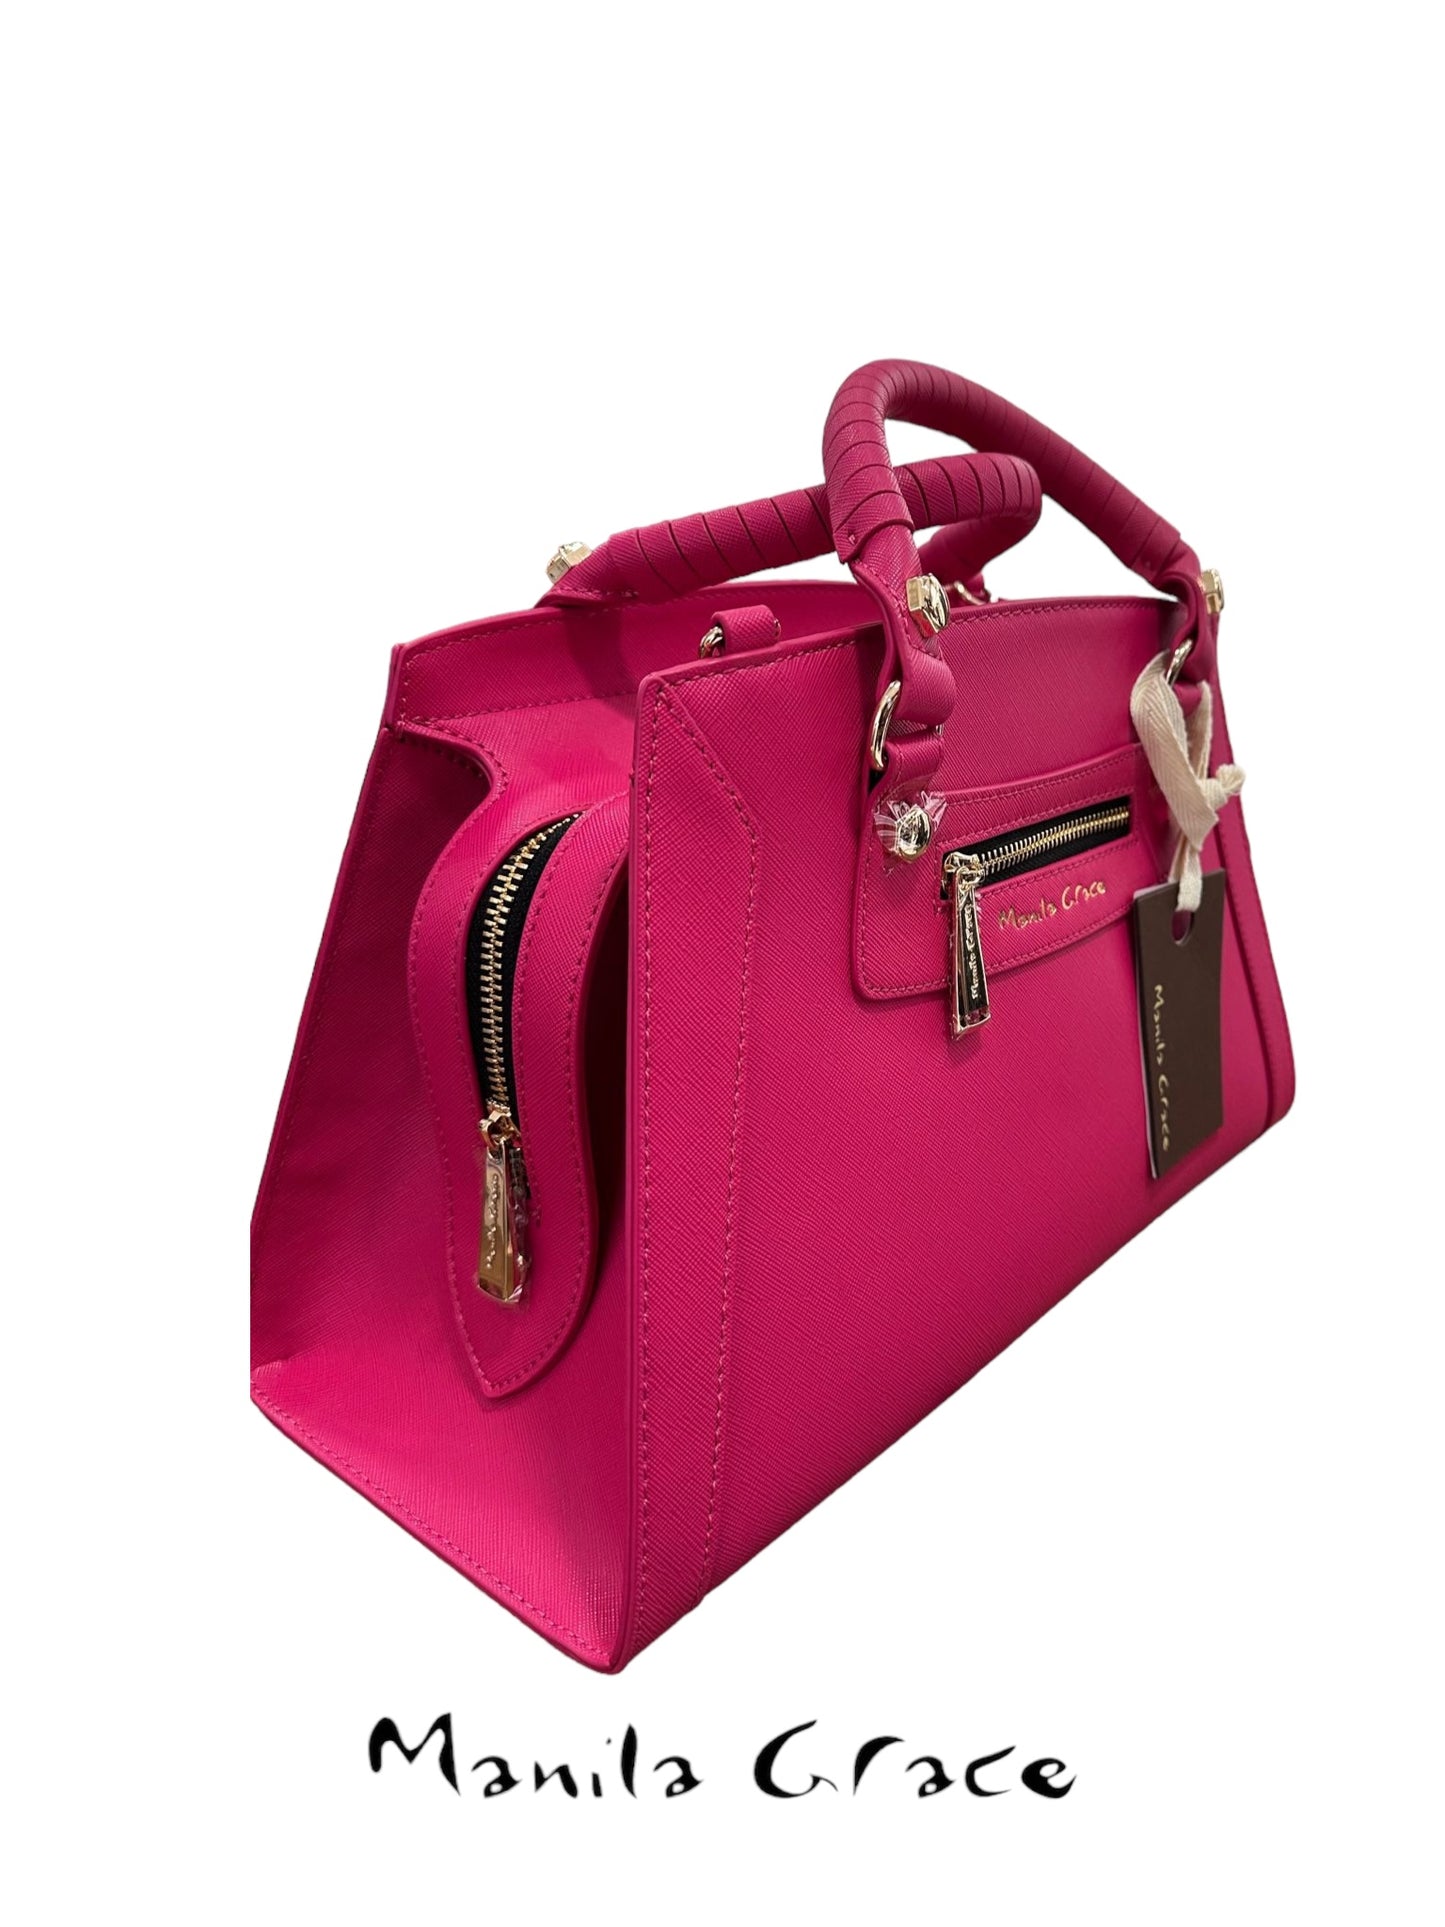 Mittelgroße Einkaufstasche „Manila Grace“ in der Farbe Fuchsia